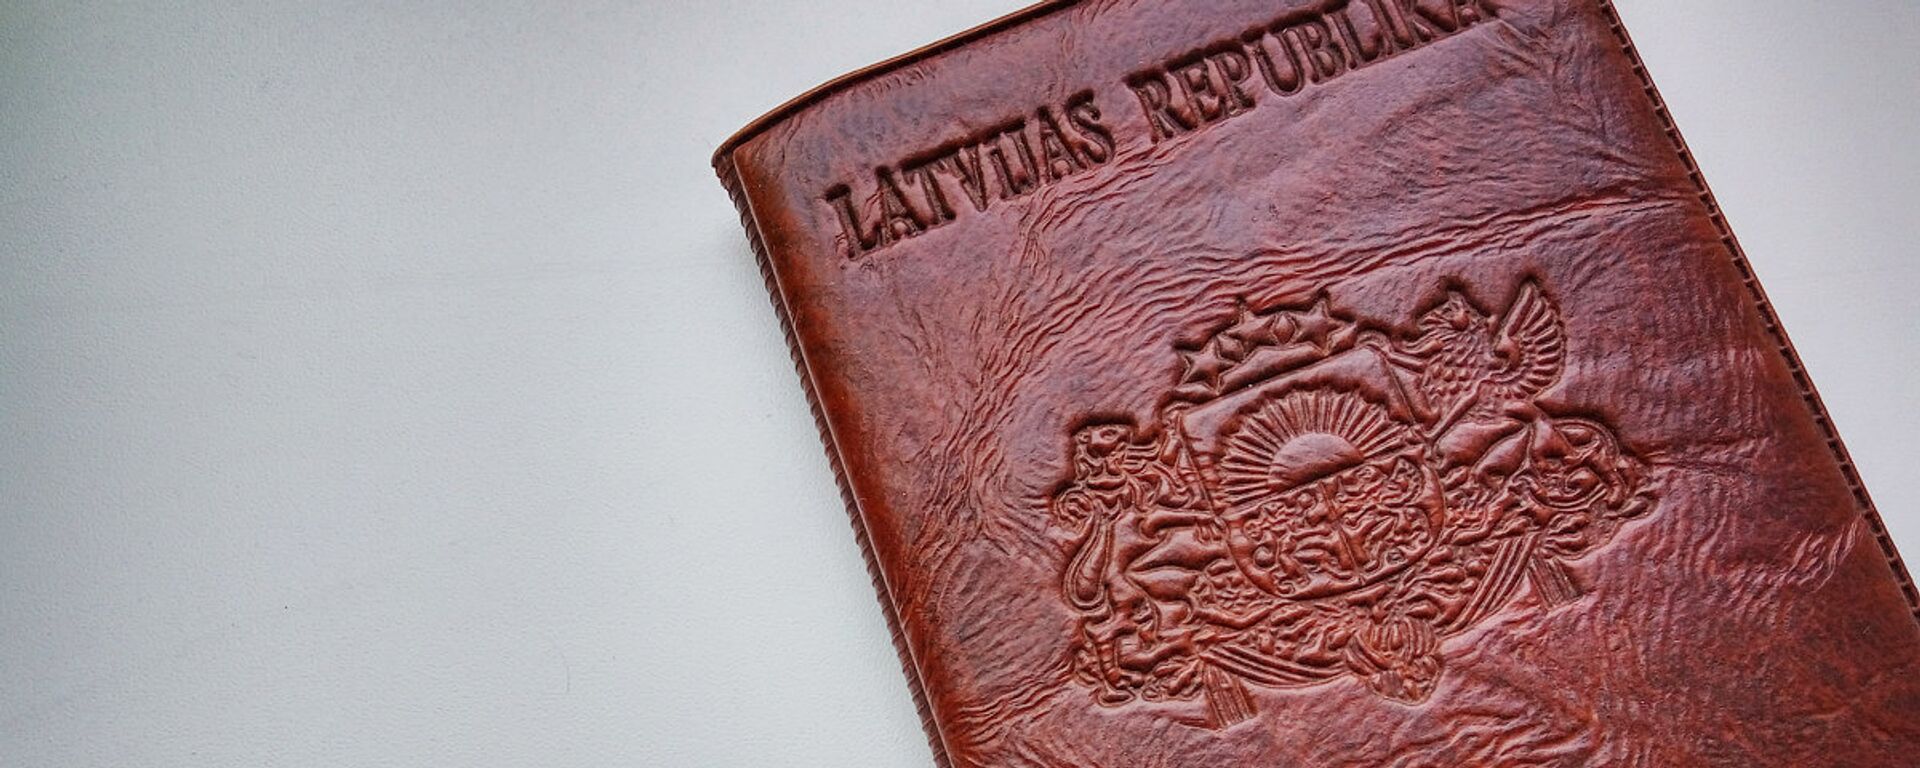 Паспорт гражданина Латвии - Sputnik Латвия, 1920, 16.05.2021